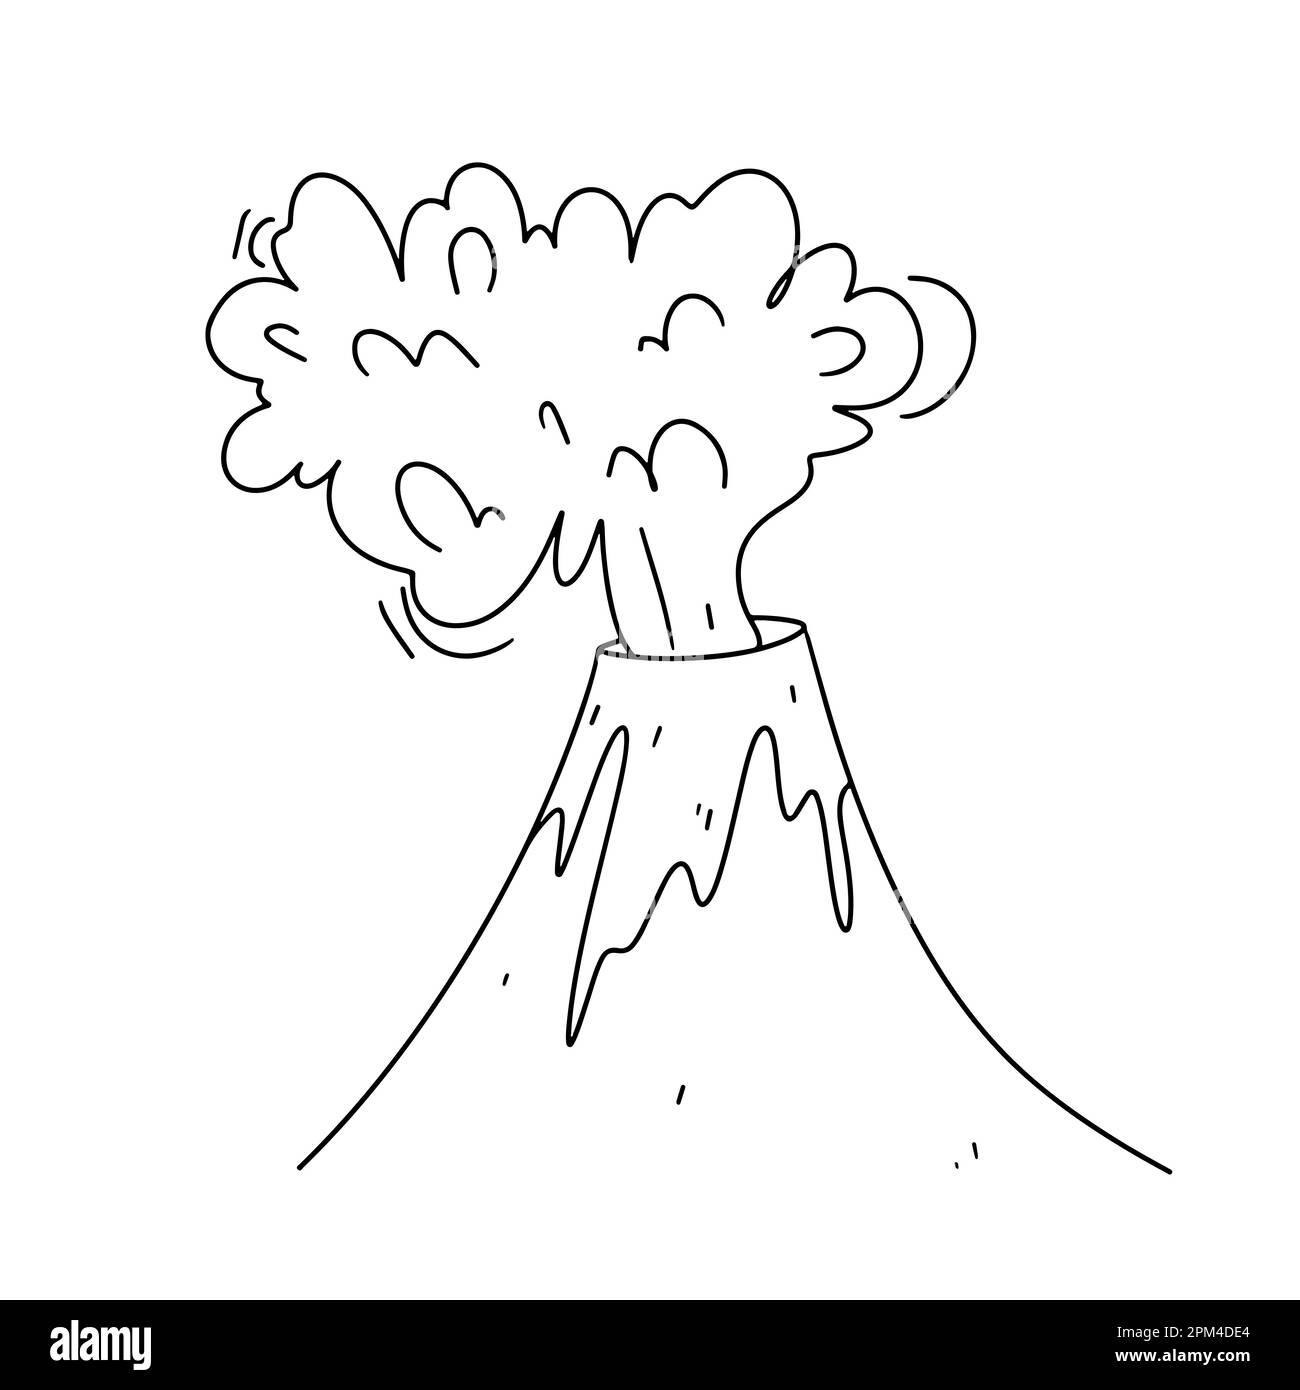 Eruzione del vulcano in stile doodle disegnato a mano. Illustrazione vettoriale isolata su sfondo bianco. Libro da colorare. Illustrazione Vettoriale